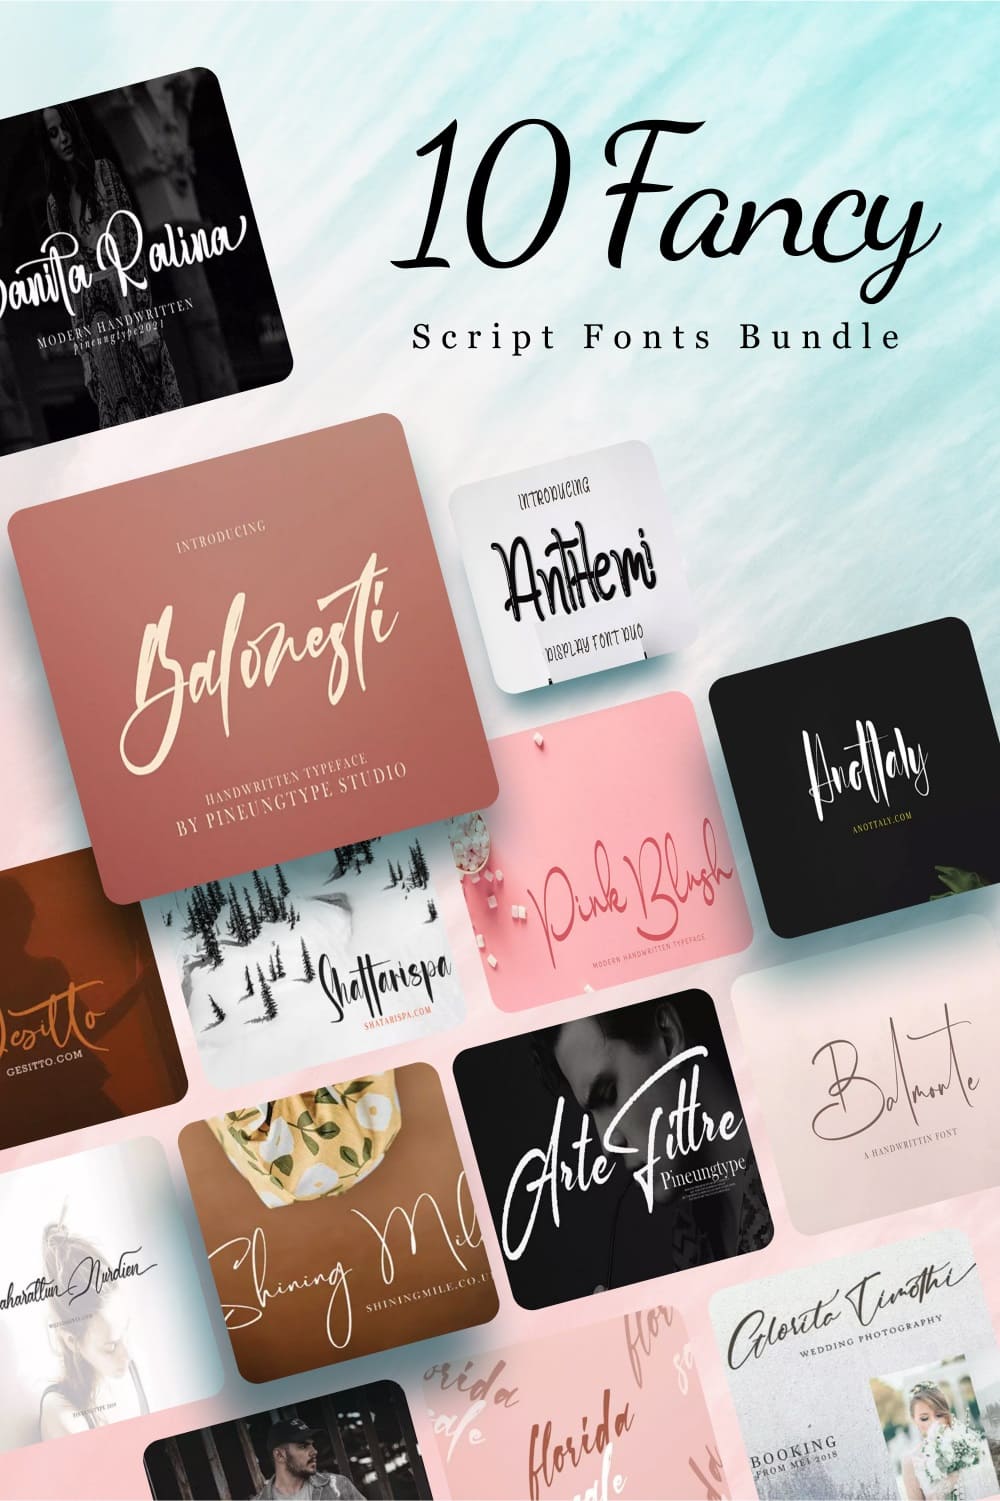 Fresh script fonts bundle Pinterest collage image.